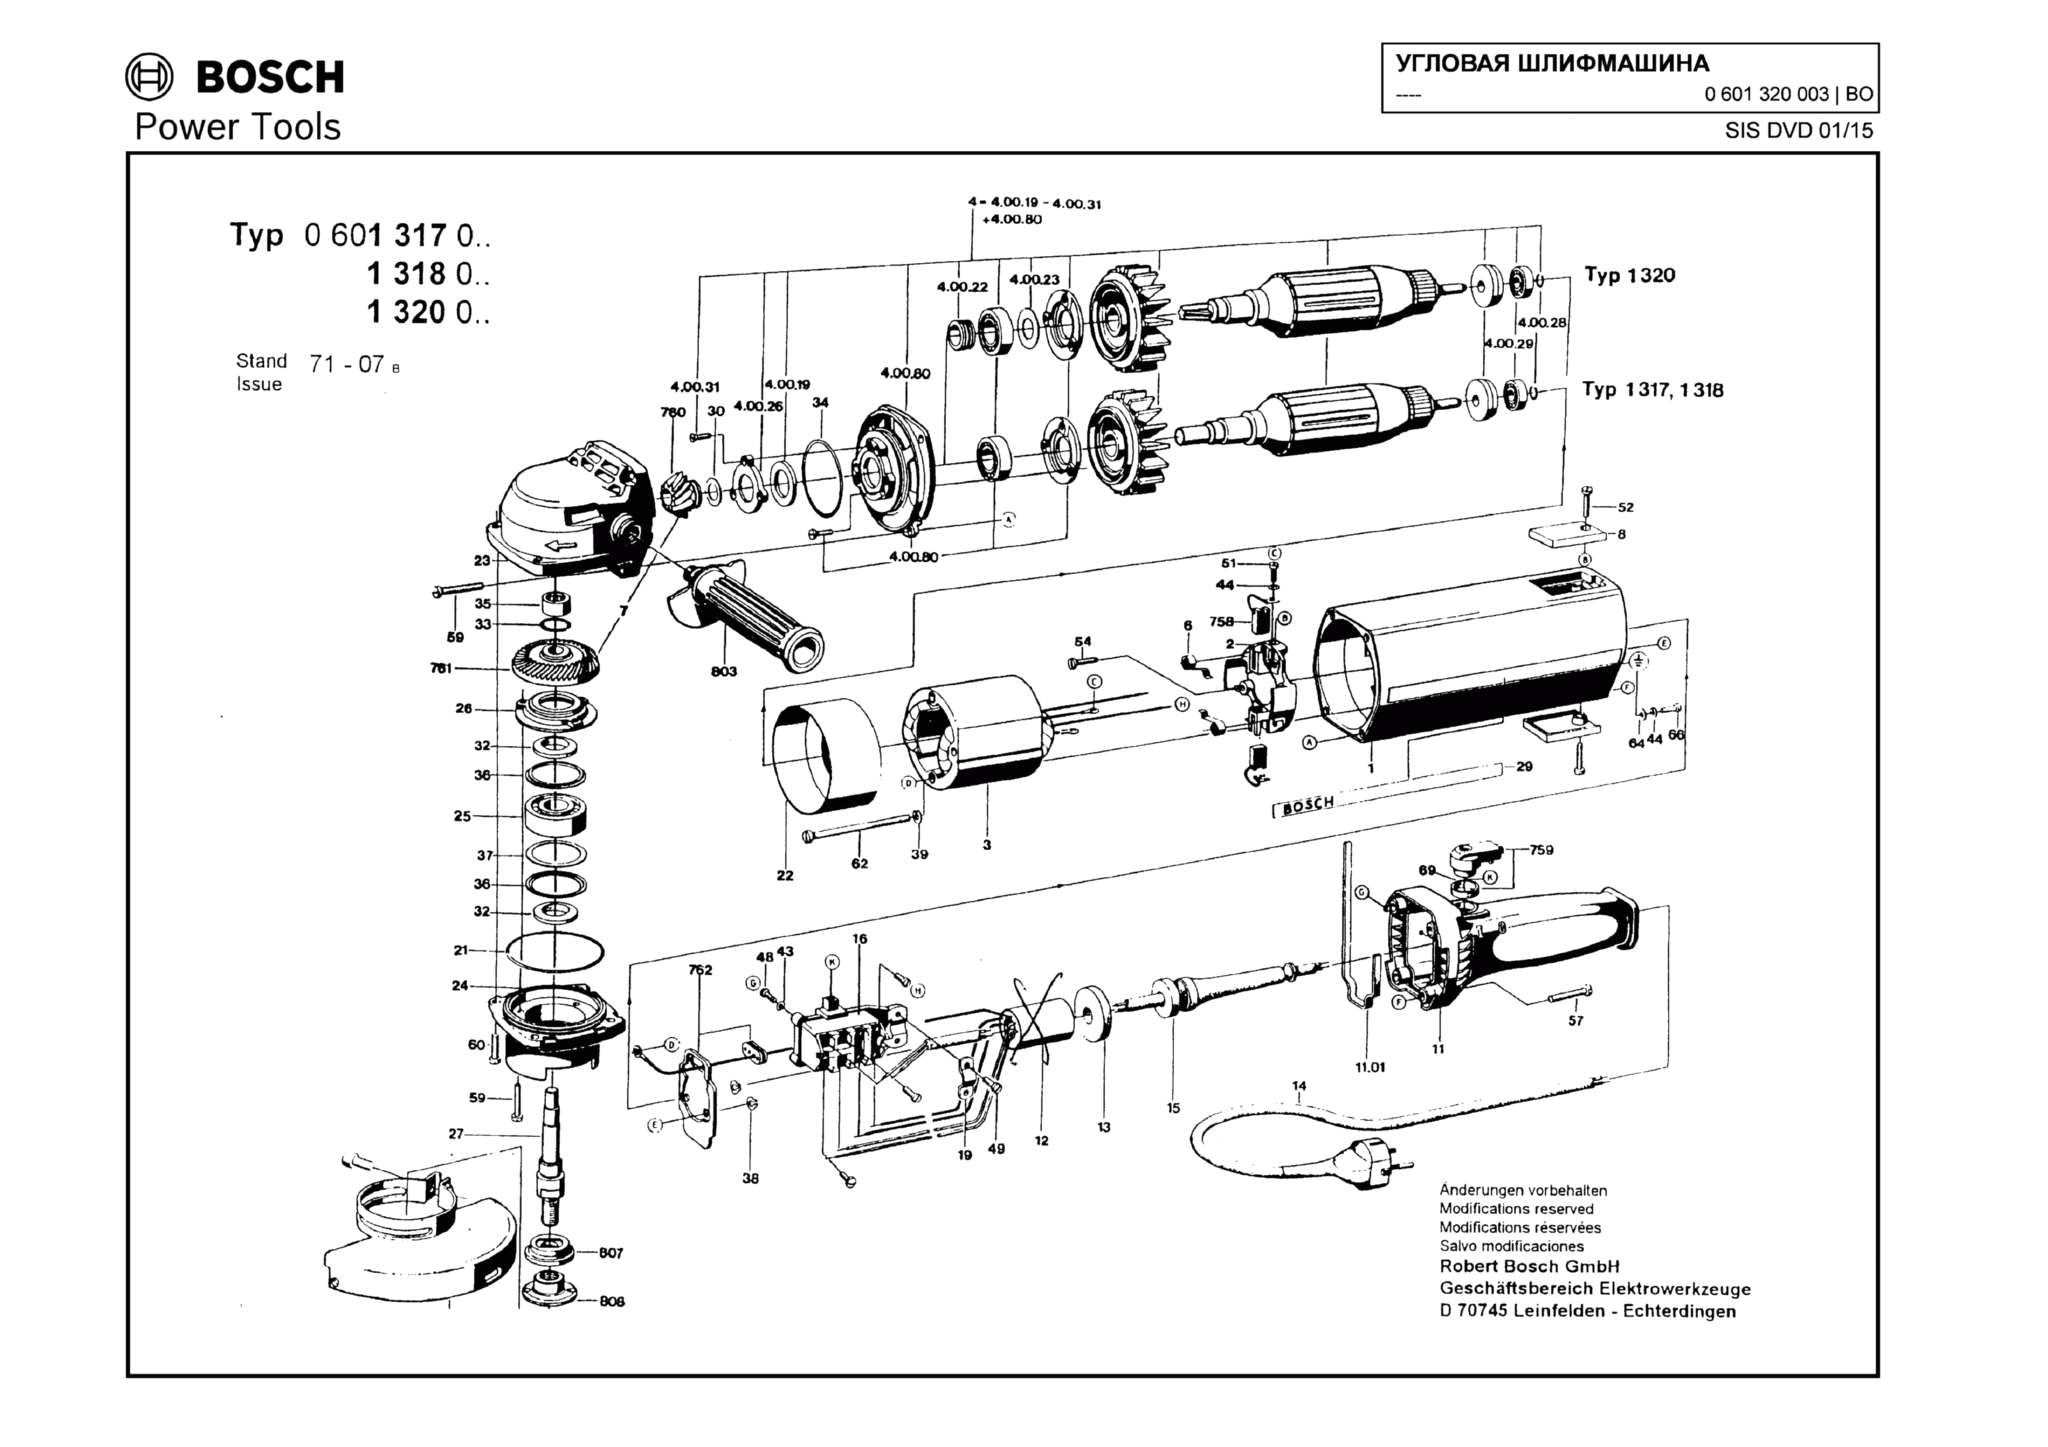 Запчасти, схема и деталировка Bosch (ТИП 0601320003)